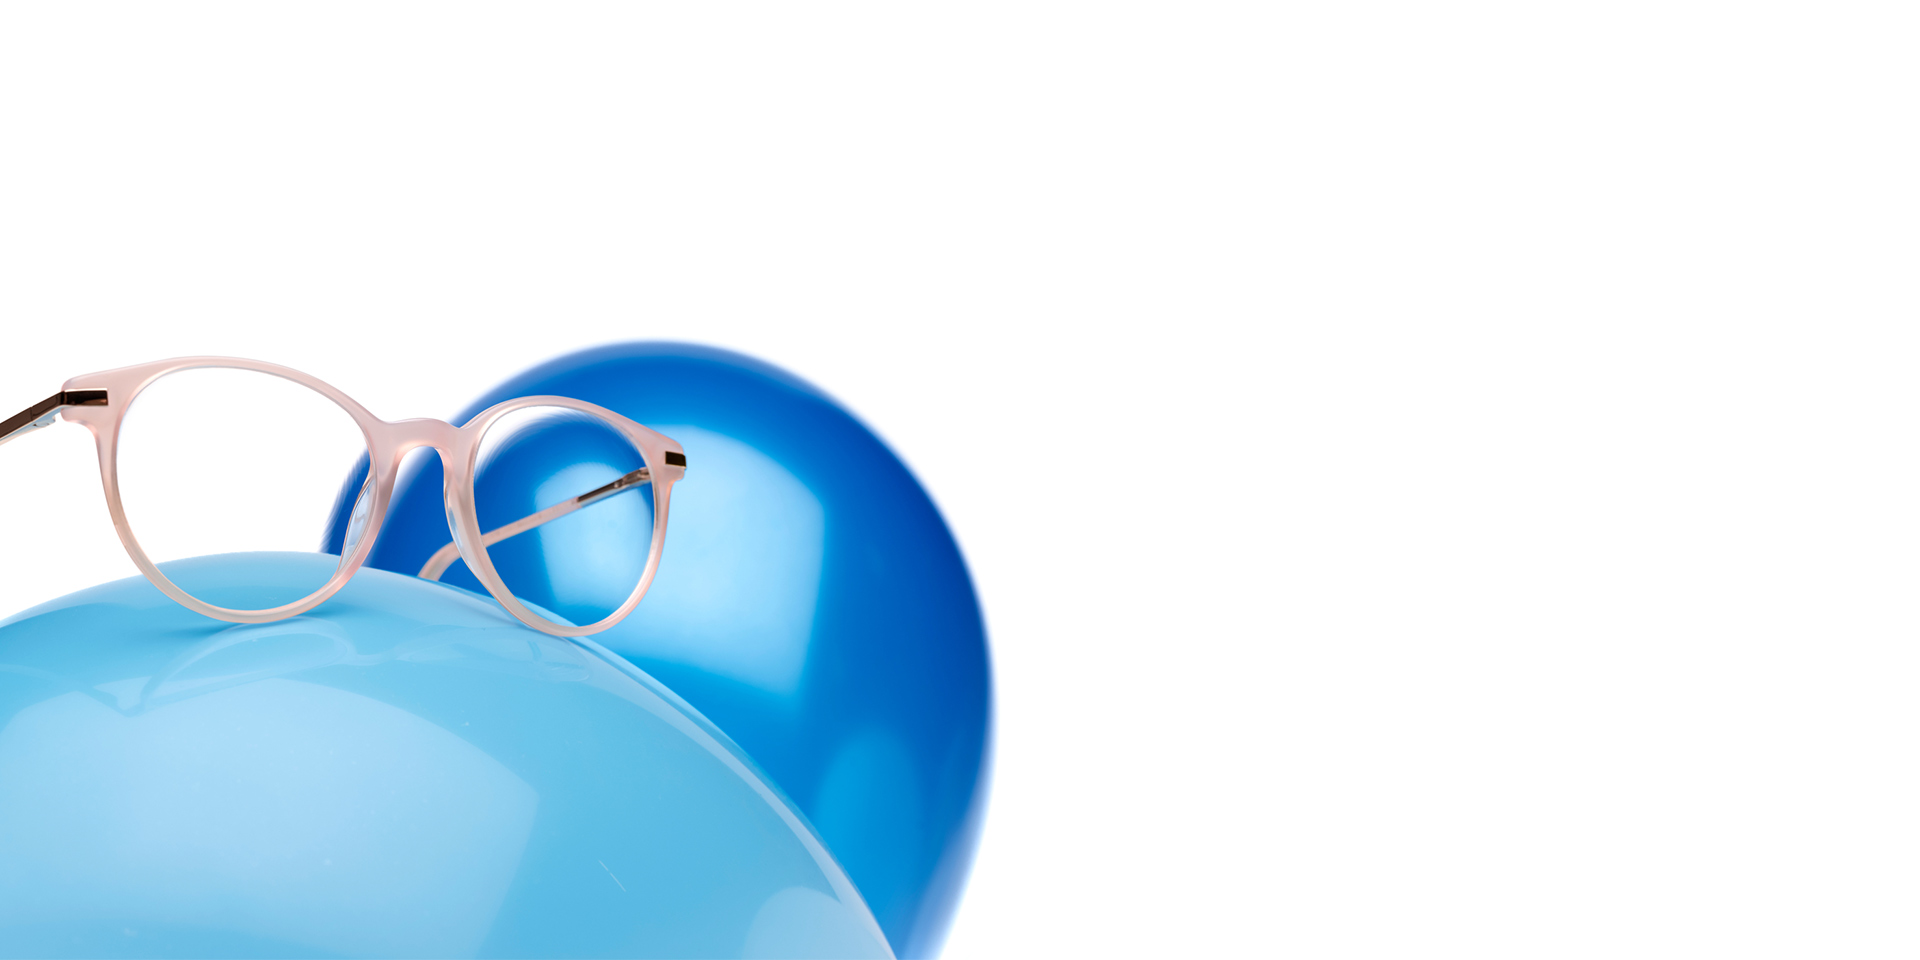 As lentes ZEISS MyoCare numa armação bege rosada são mostradas dentro de um balão azul claro Ao fundo, outro balão azul ligeiramente mais escuro.